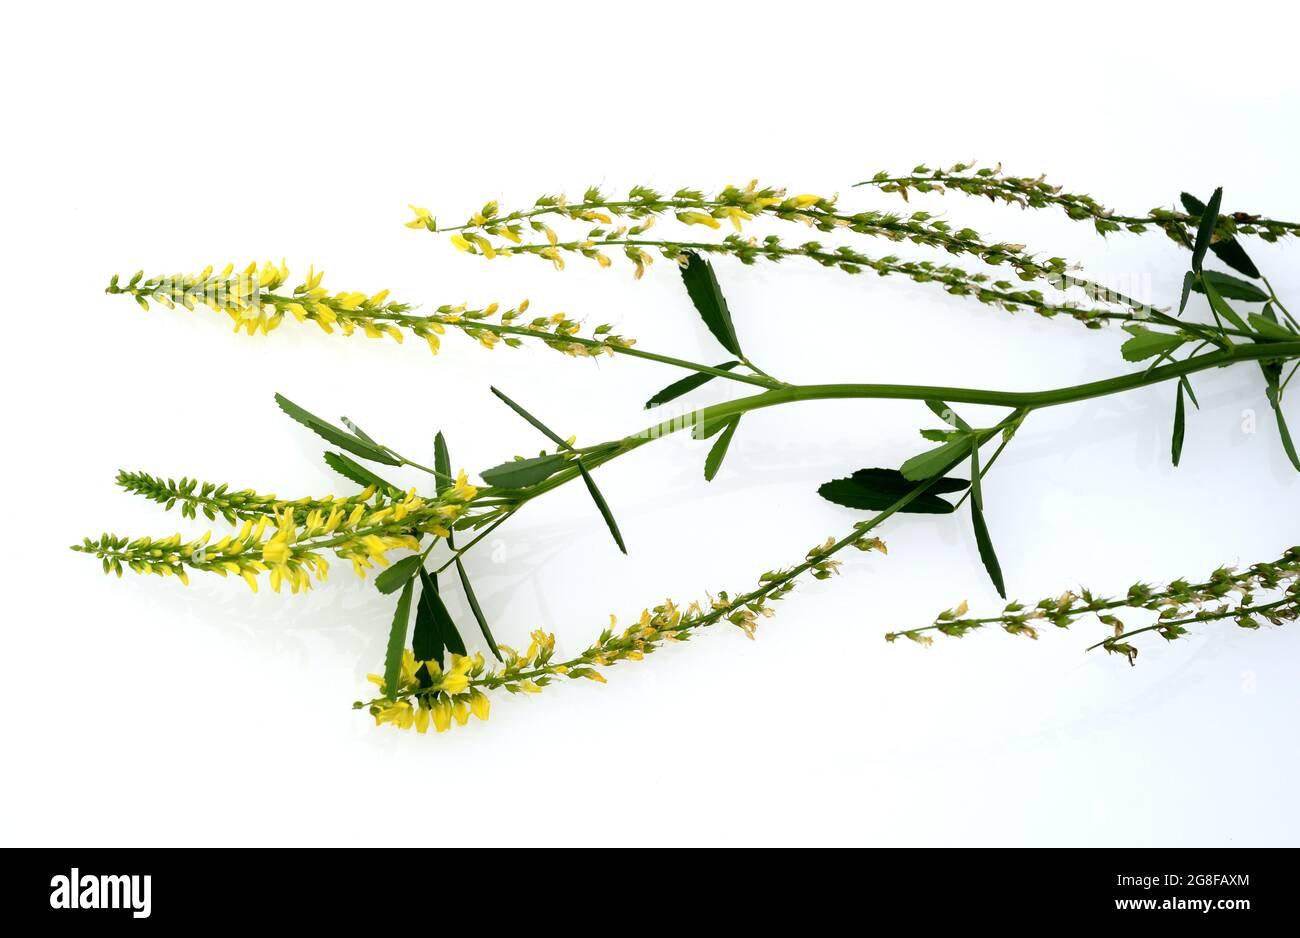 Steinklee, Melilotus officinalis, ist eine wichtige Heil- und Medizinalpflanze und mit weissen oder gelben Bluten. Süßes Klee, Melilotus officinal Stockfoto